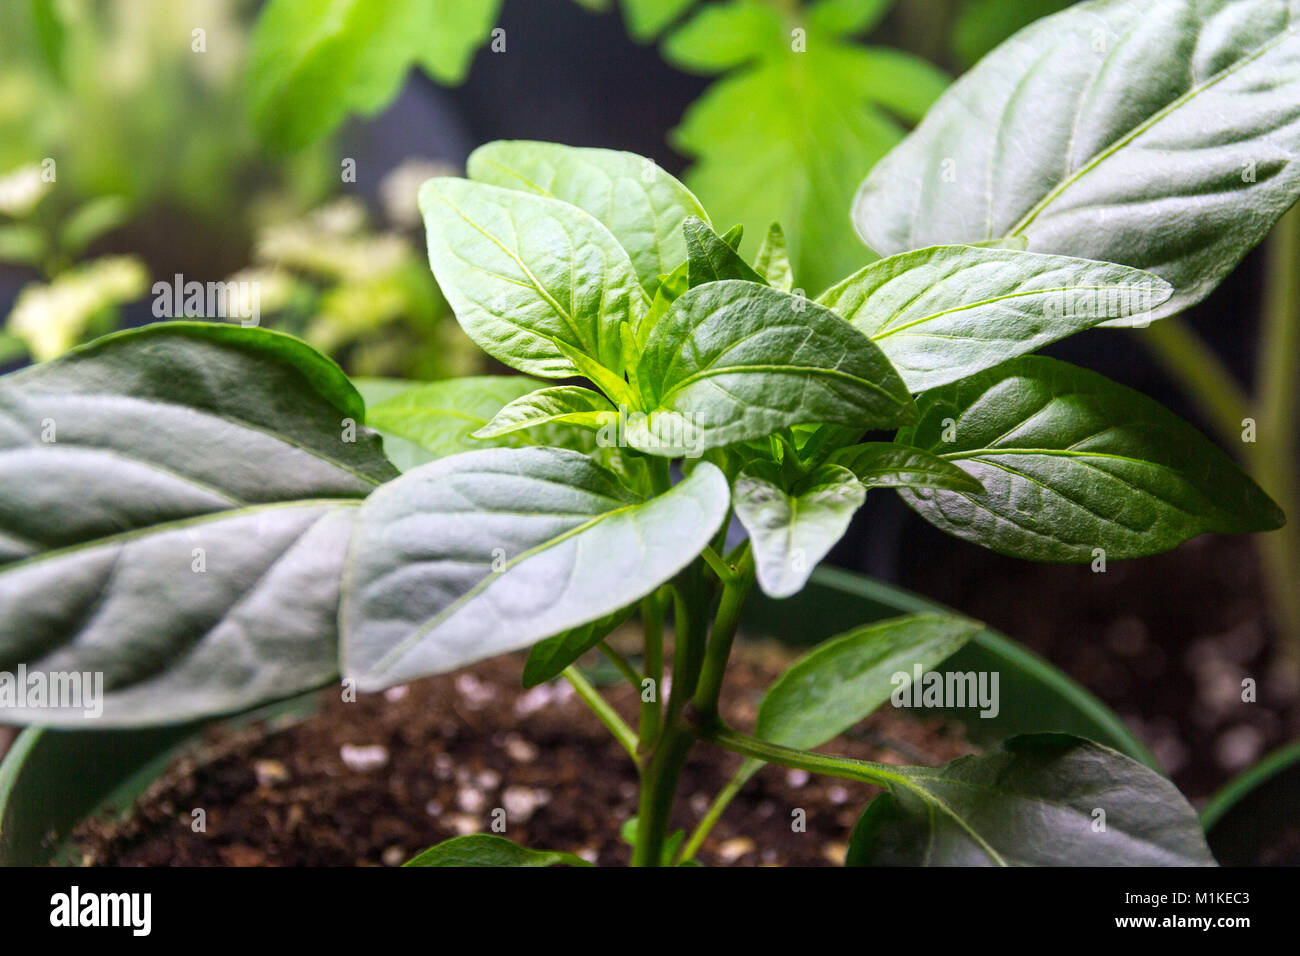 Pepper plant growing intérieur sous lumière néon Banque D'Images